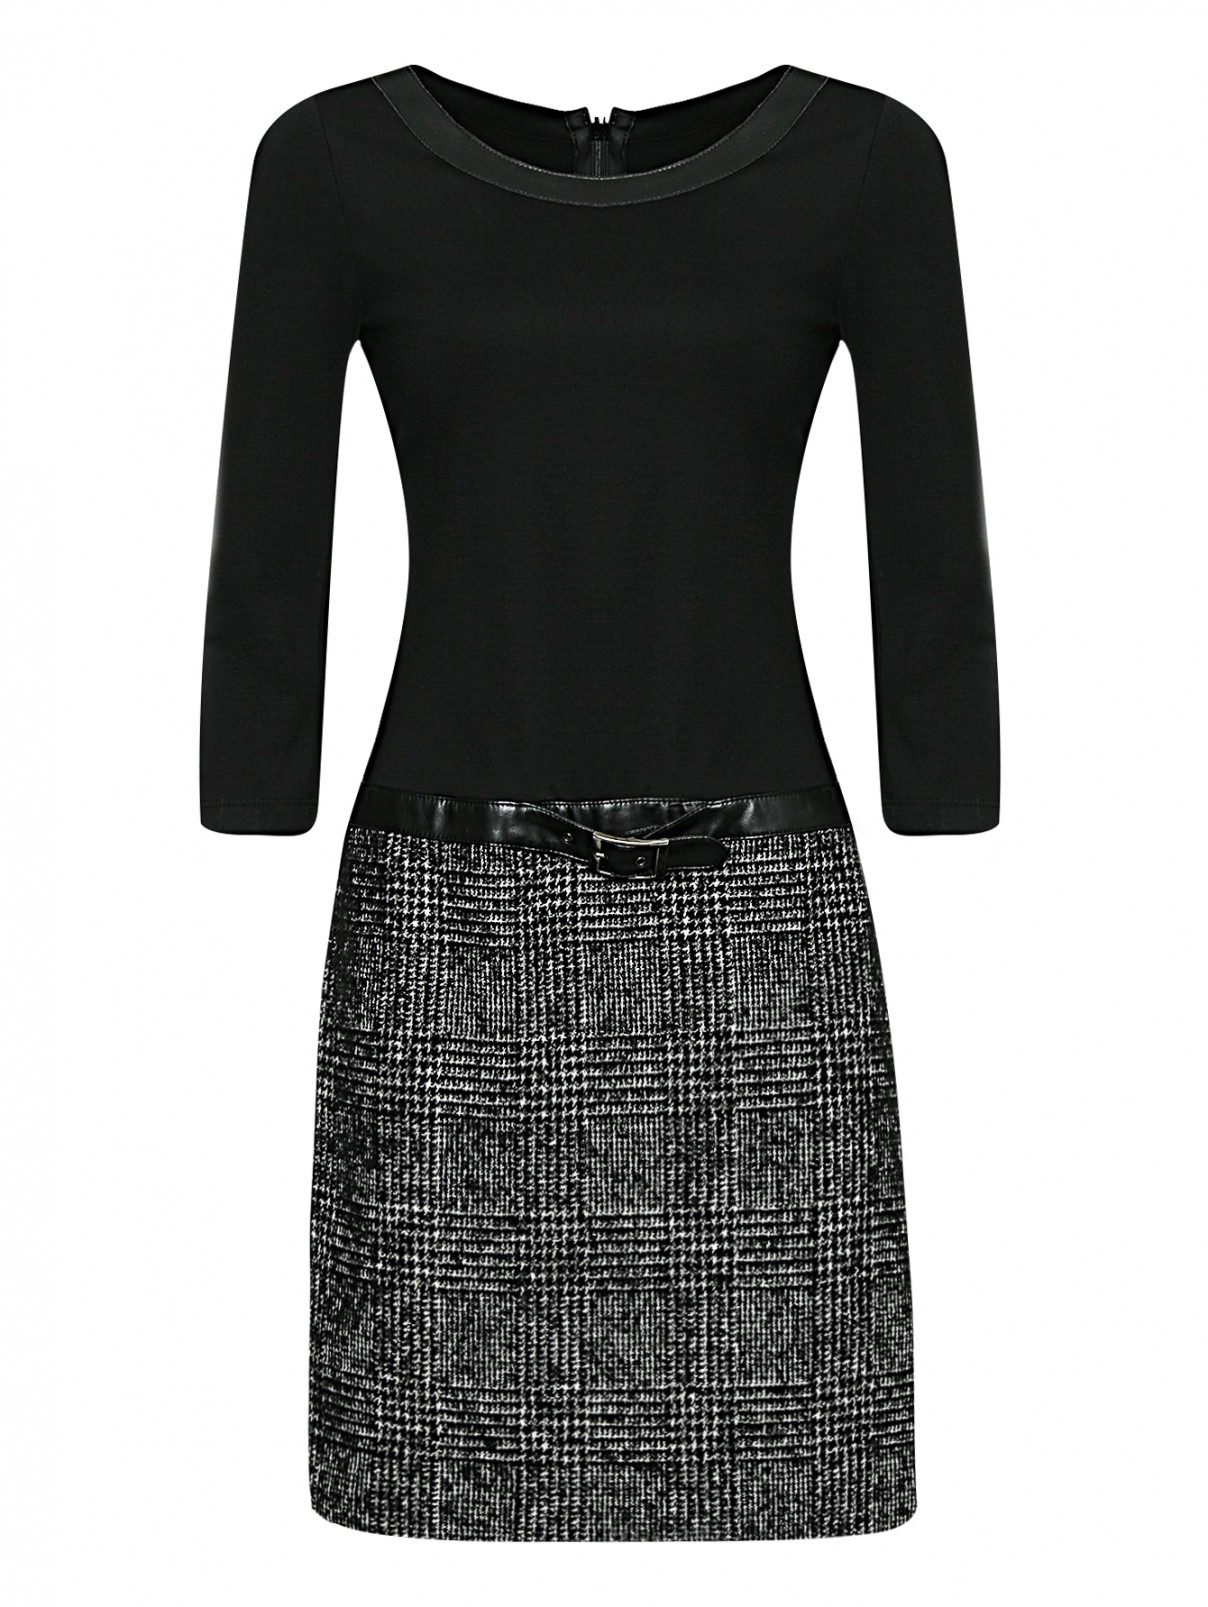 Комбинированное платье с рукавами 3/4 Luisa Spagnoli  –  Общий вид  – Цвет:  Черный